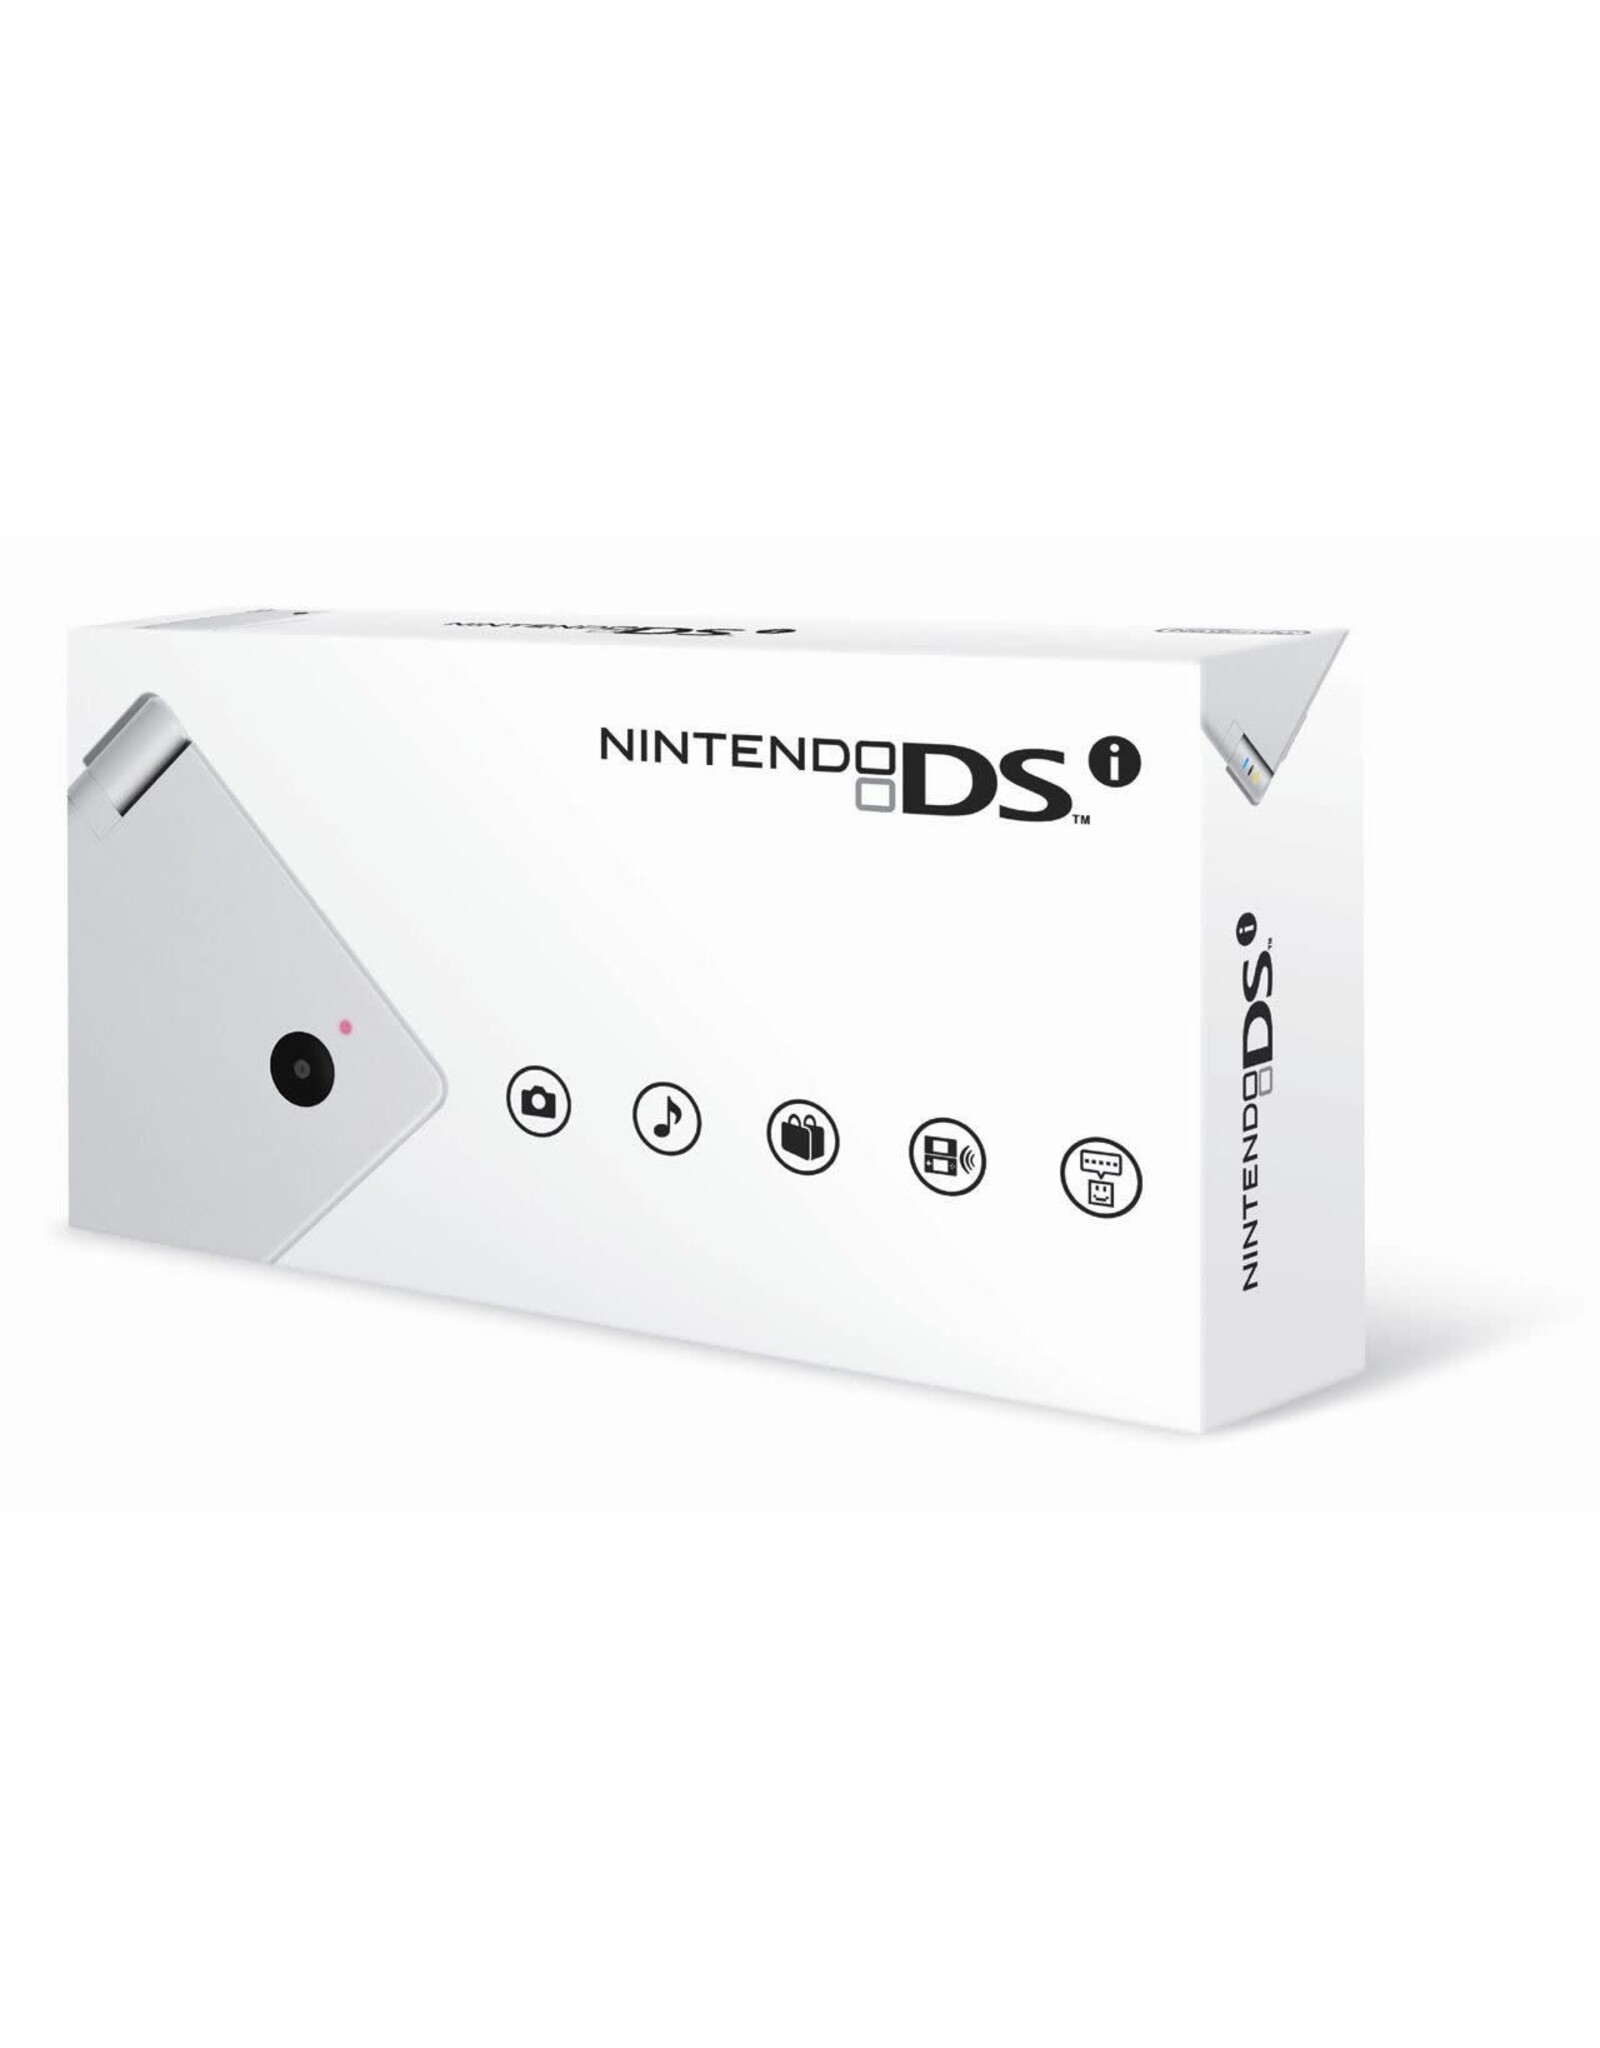 Nintendo DS Nintendo DSi System White (Brand New)